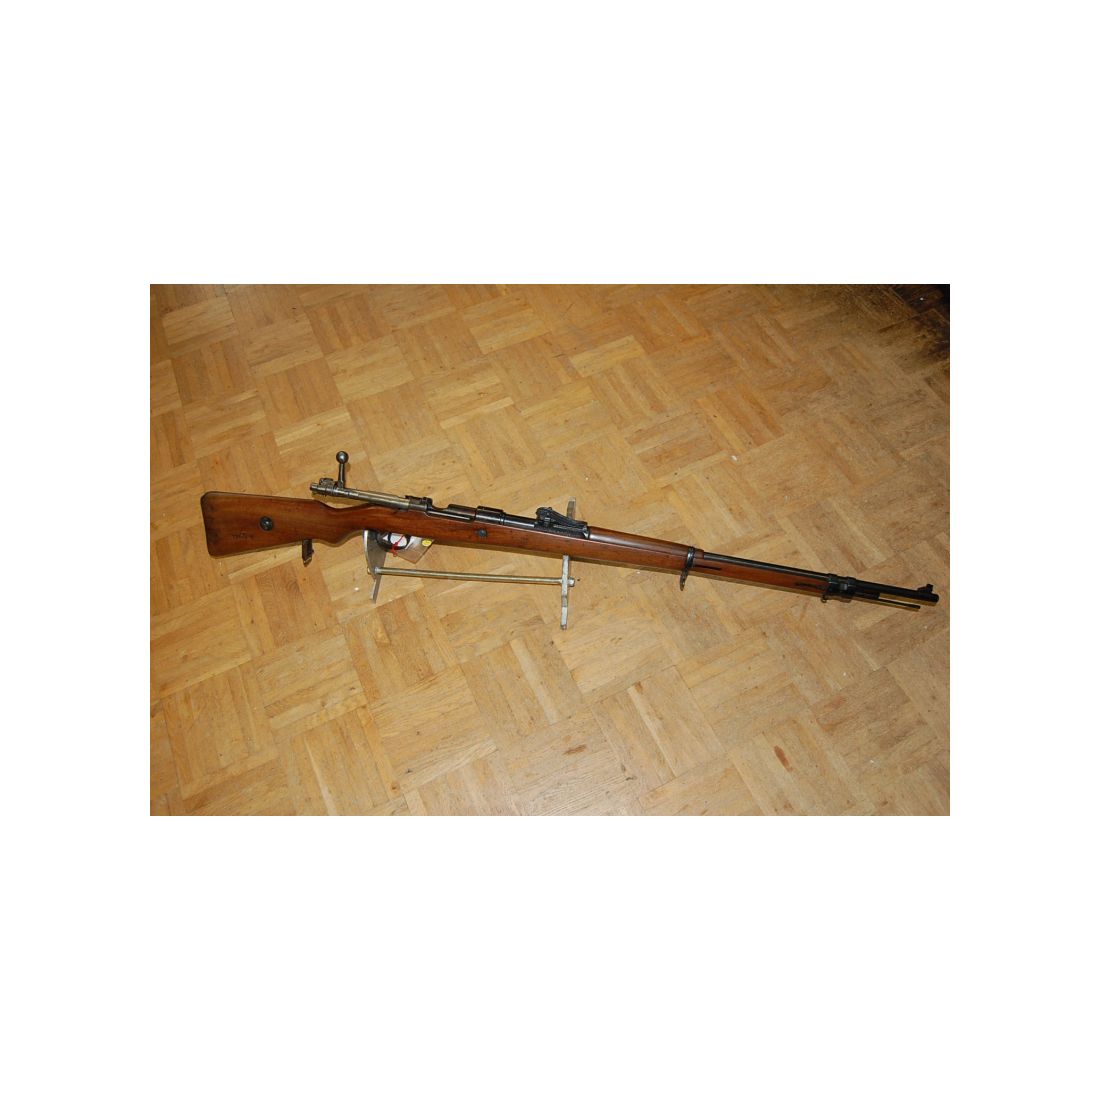 Rep. Büchse Gewehr 98 Mauser Spandau 1916 Fertigung Kal. 8x57IS im Bestzustand vom Sammler